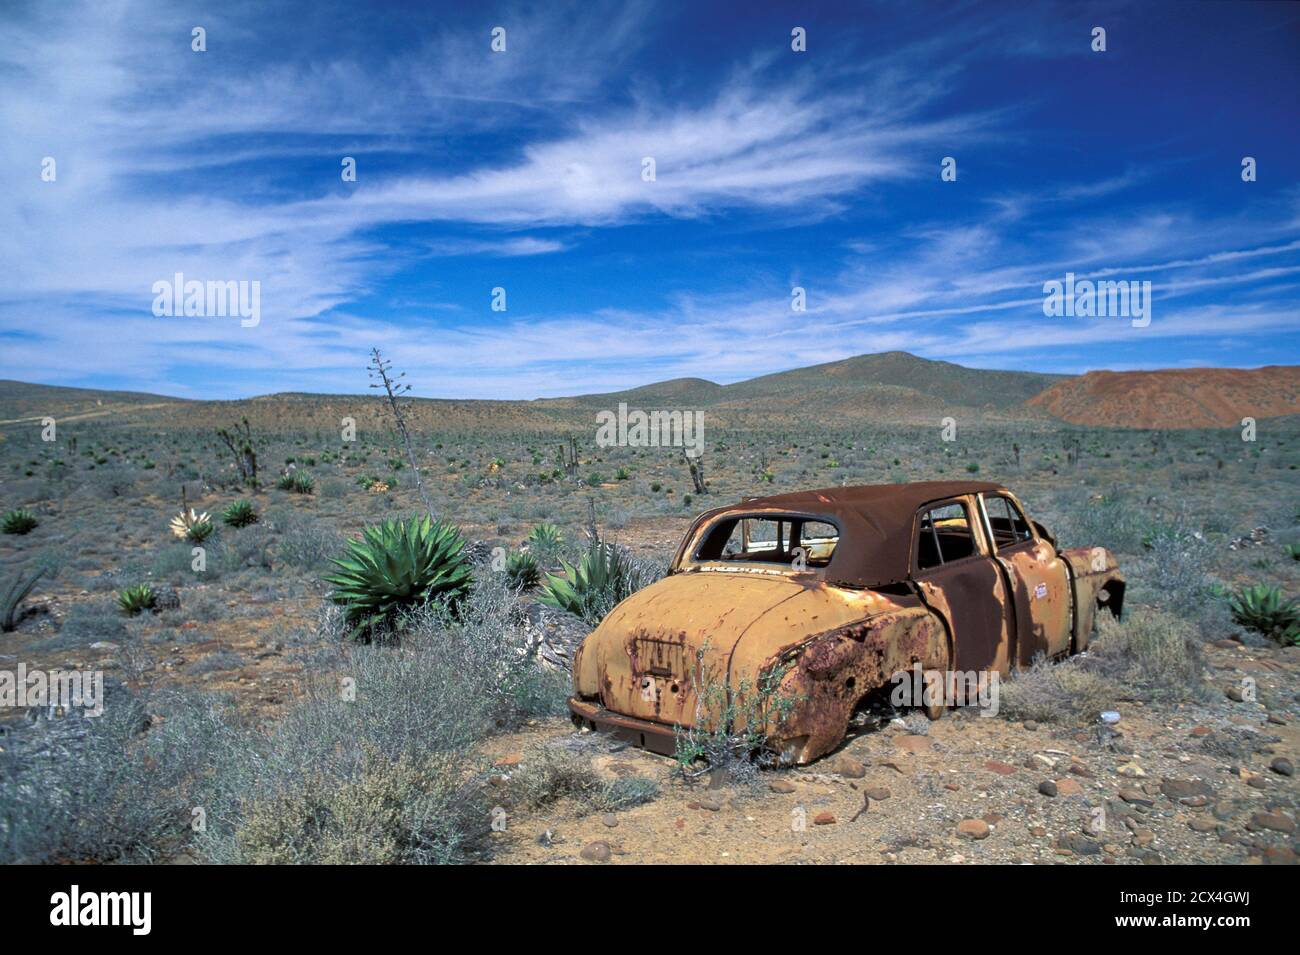 Mexico, Mexican, Baja California, Sierra de San Francisco, junked car, desert, Stock Photo